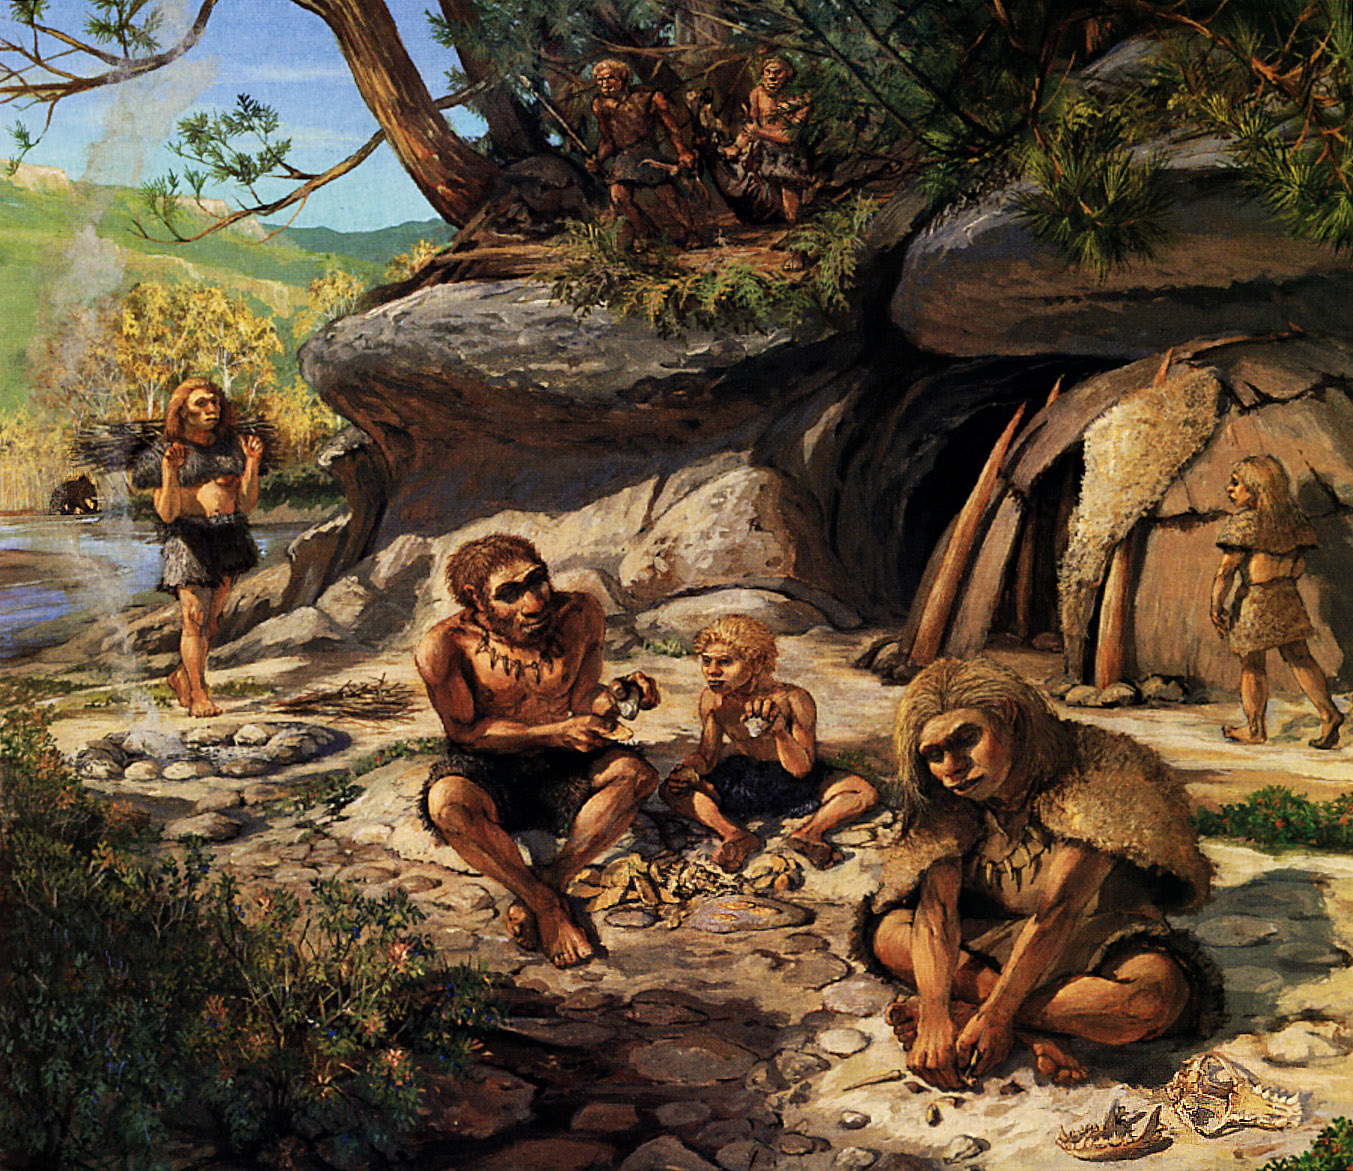 Οι Νεάντερταλ έφτιαχναν εργαλεία με φωτιά πριν από 170.000 χρόνια